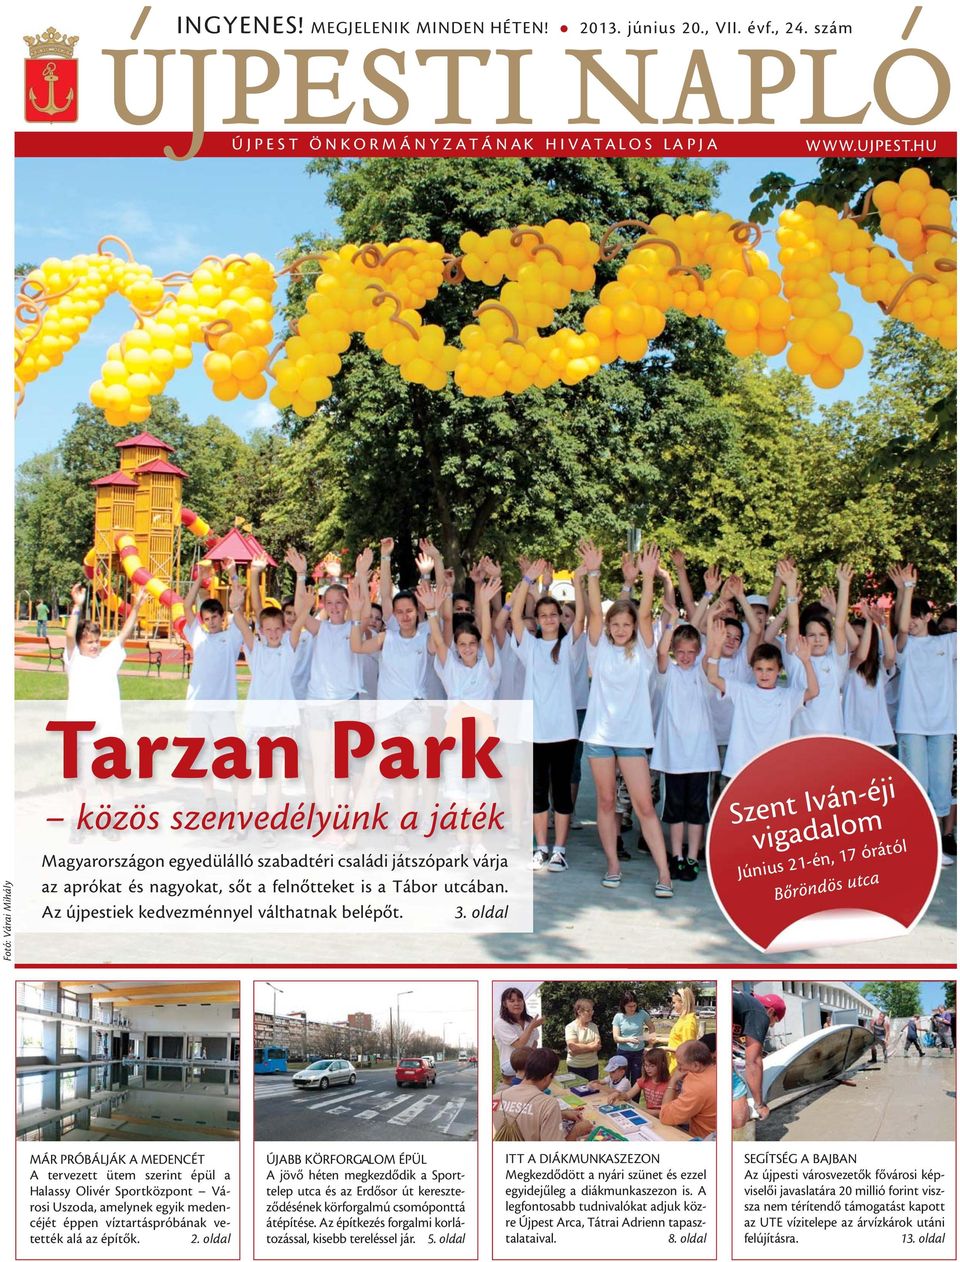 ÚJPESTI NAPLÓ. Tarzan Park. közös szenvedélyünk a játék. Szent Iván-éji  vigadalom - PDF Ingyenes letöltés